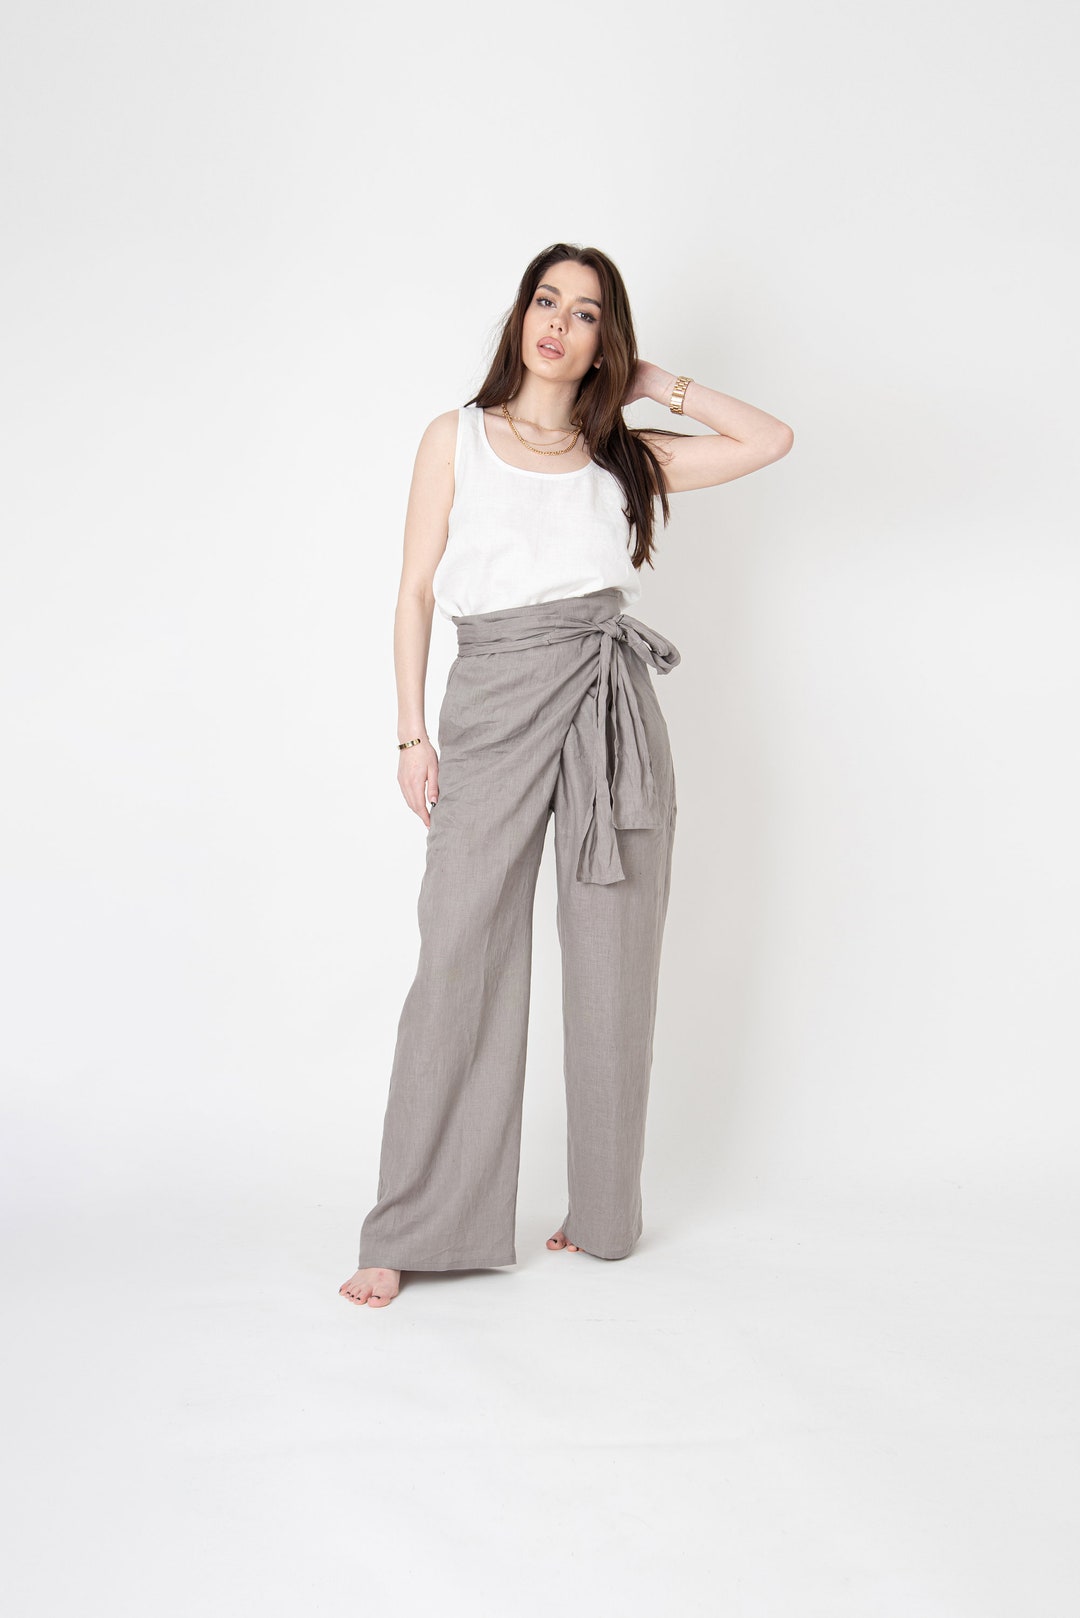 Linen Wrap Pants/linen Palazzo Pants/loose Linen Pants/linen - Etsy